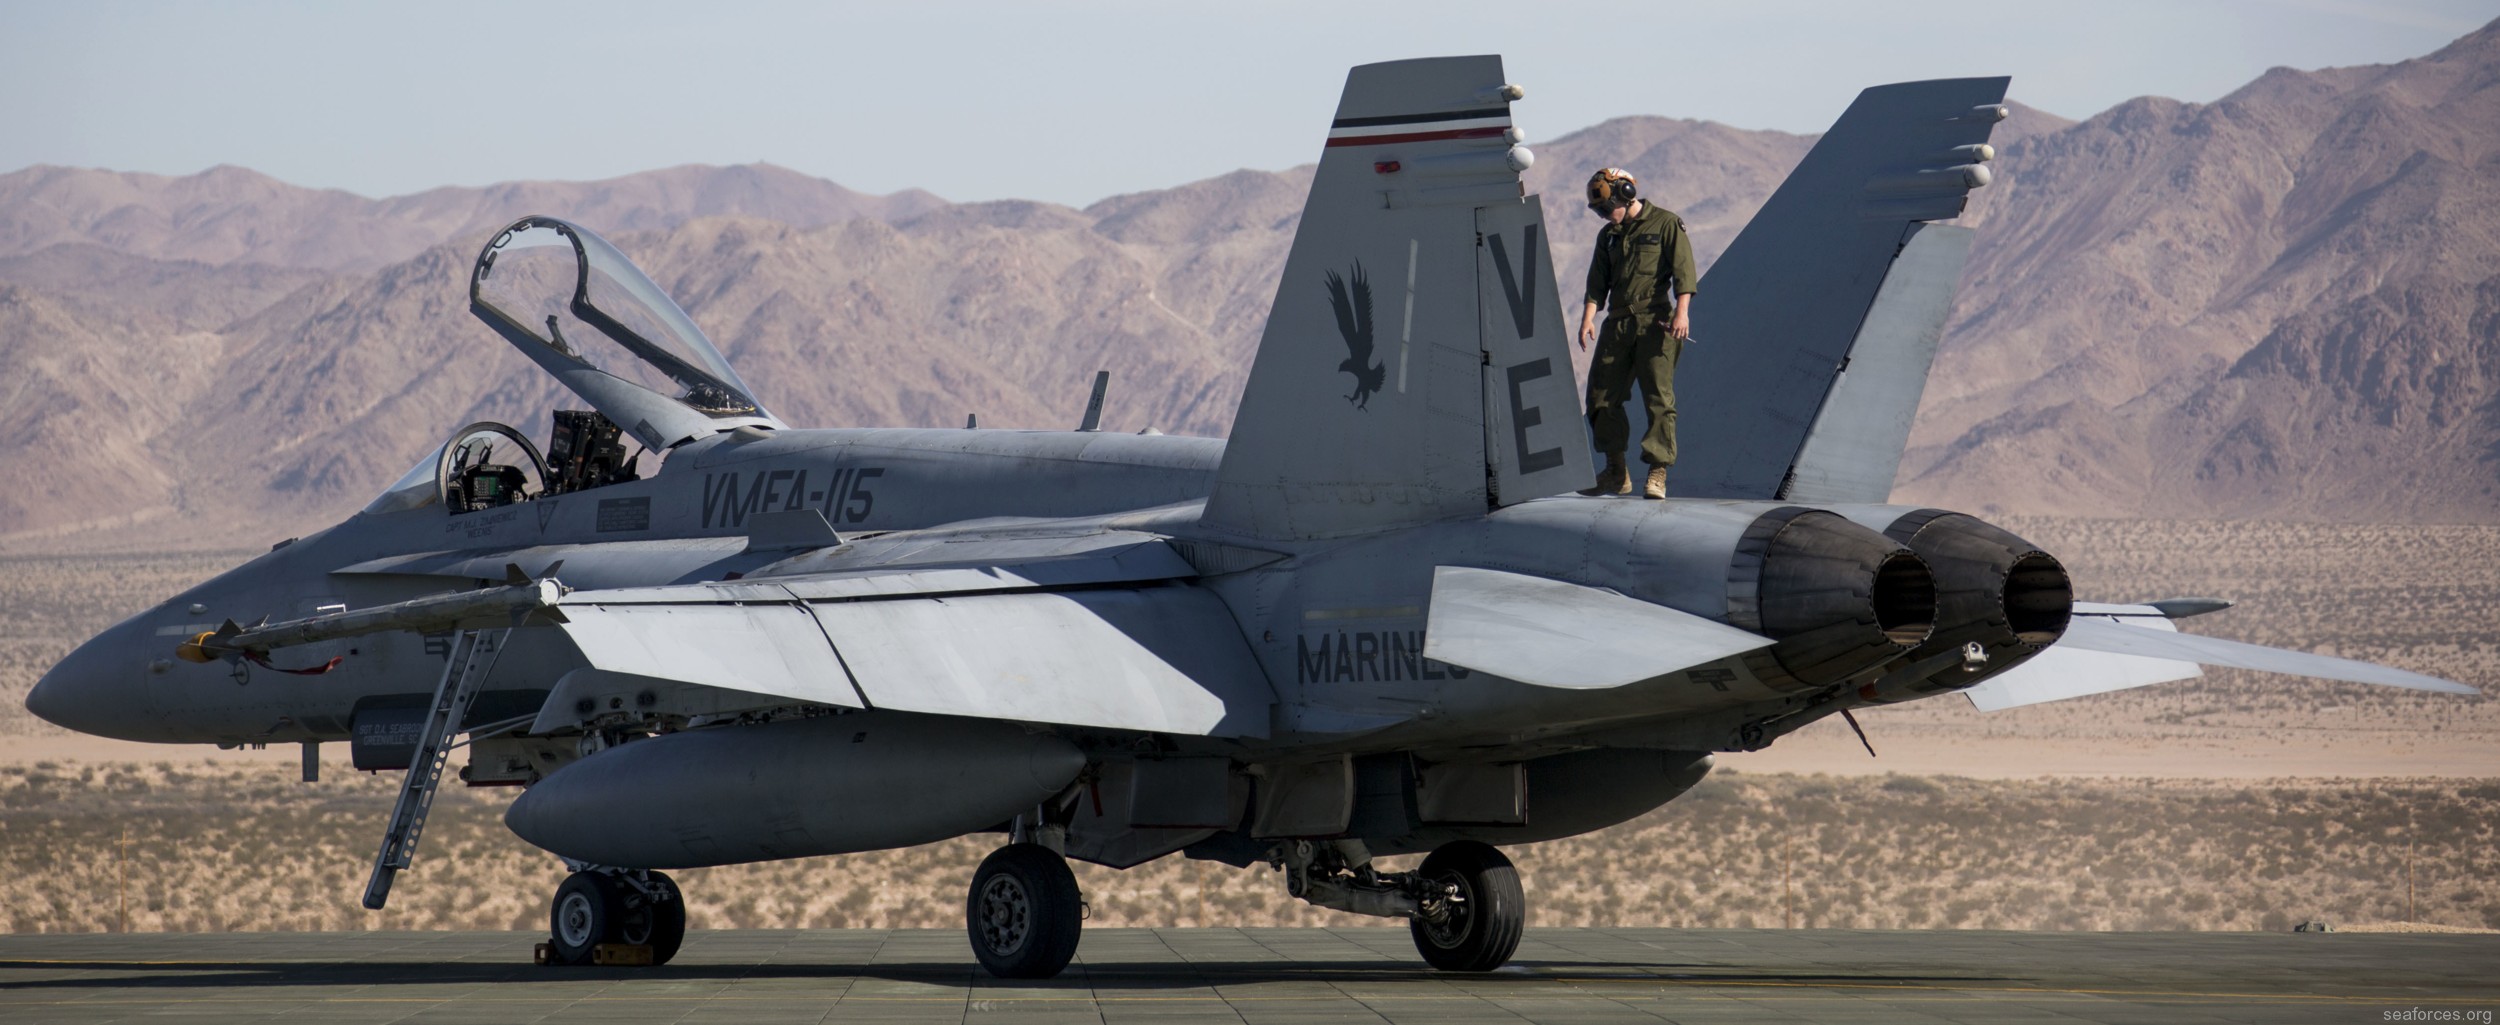 vmfa-115 silver eagles marine fighter attack squadron f/a-18a+ hornet 110